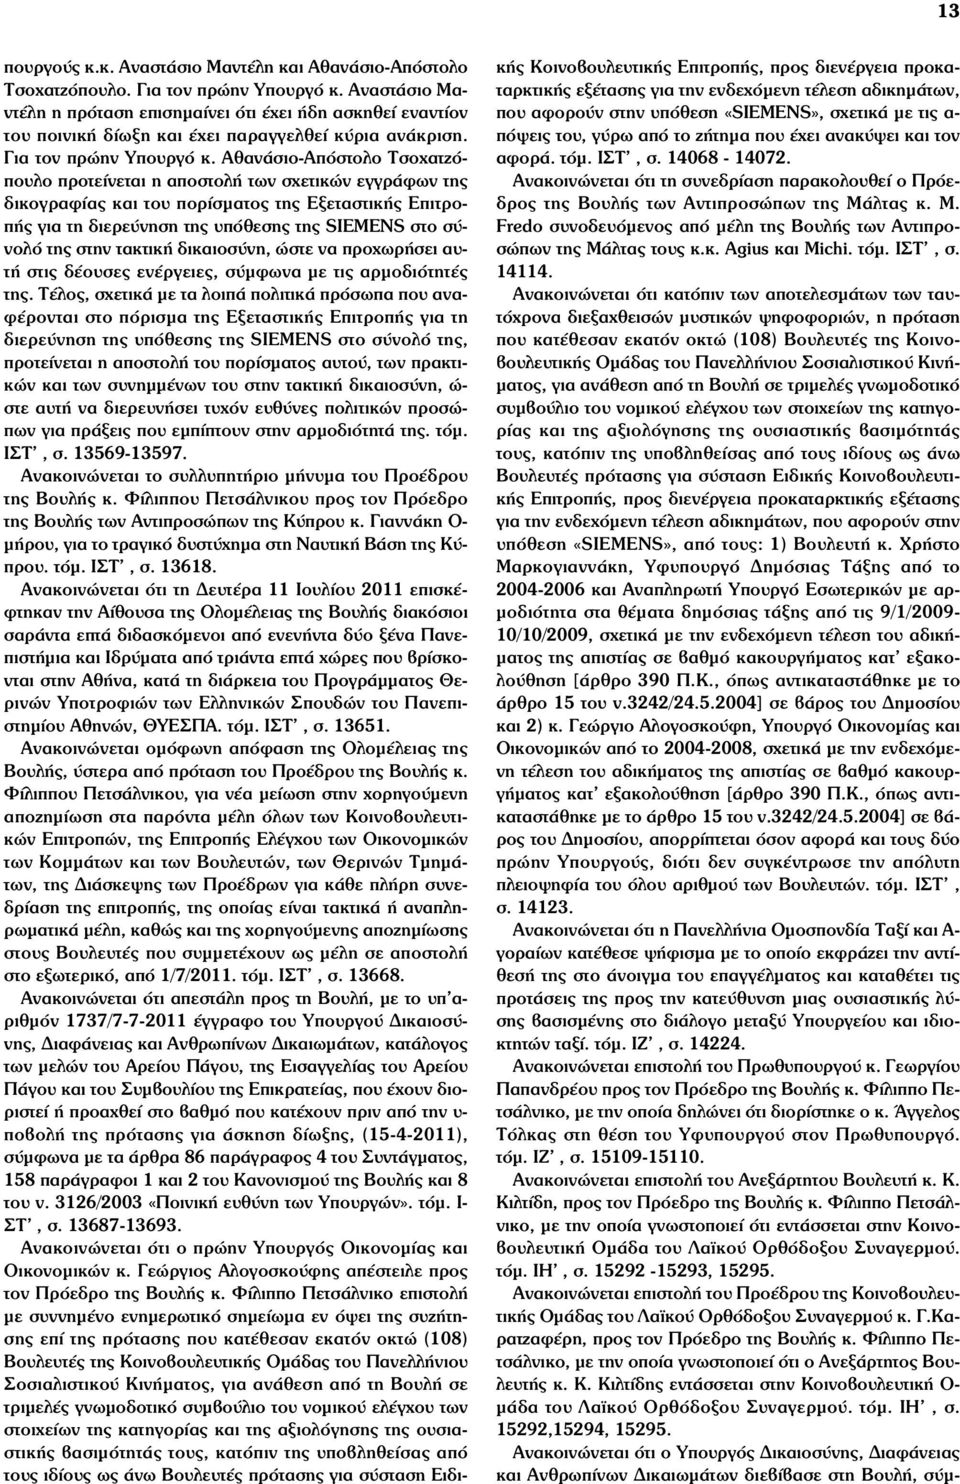 Αθανάσιο-Απόστολο Τσοχατζόπουλο προτείνεται η αποστολή των σχετικών εγγράφων της δικογραφίας και του πορίσµατος της Εξεταστικής Επιτροπής για τη διερεύνηση της υπόθεσης της SIEMENS στο σύνολό της